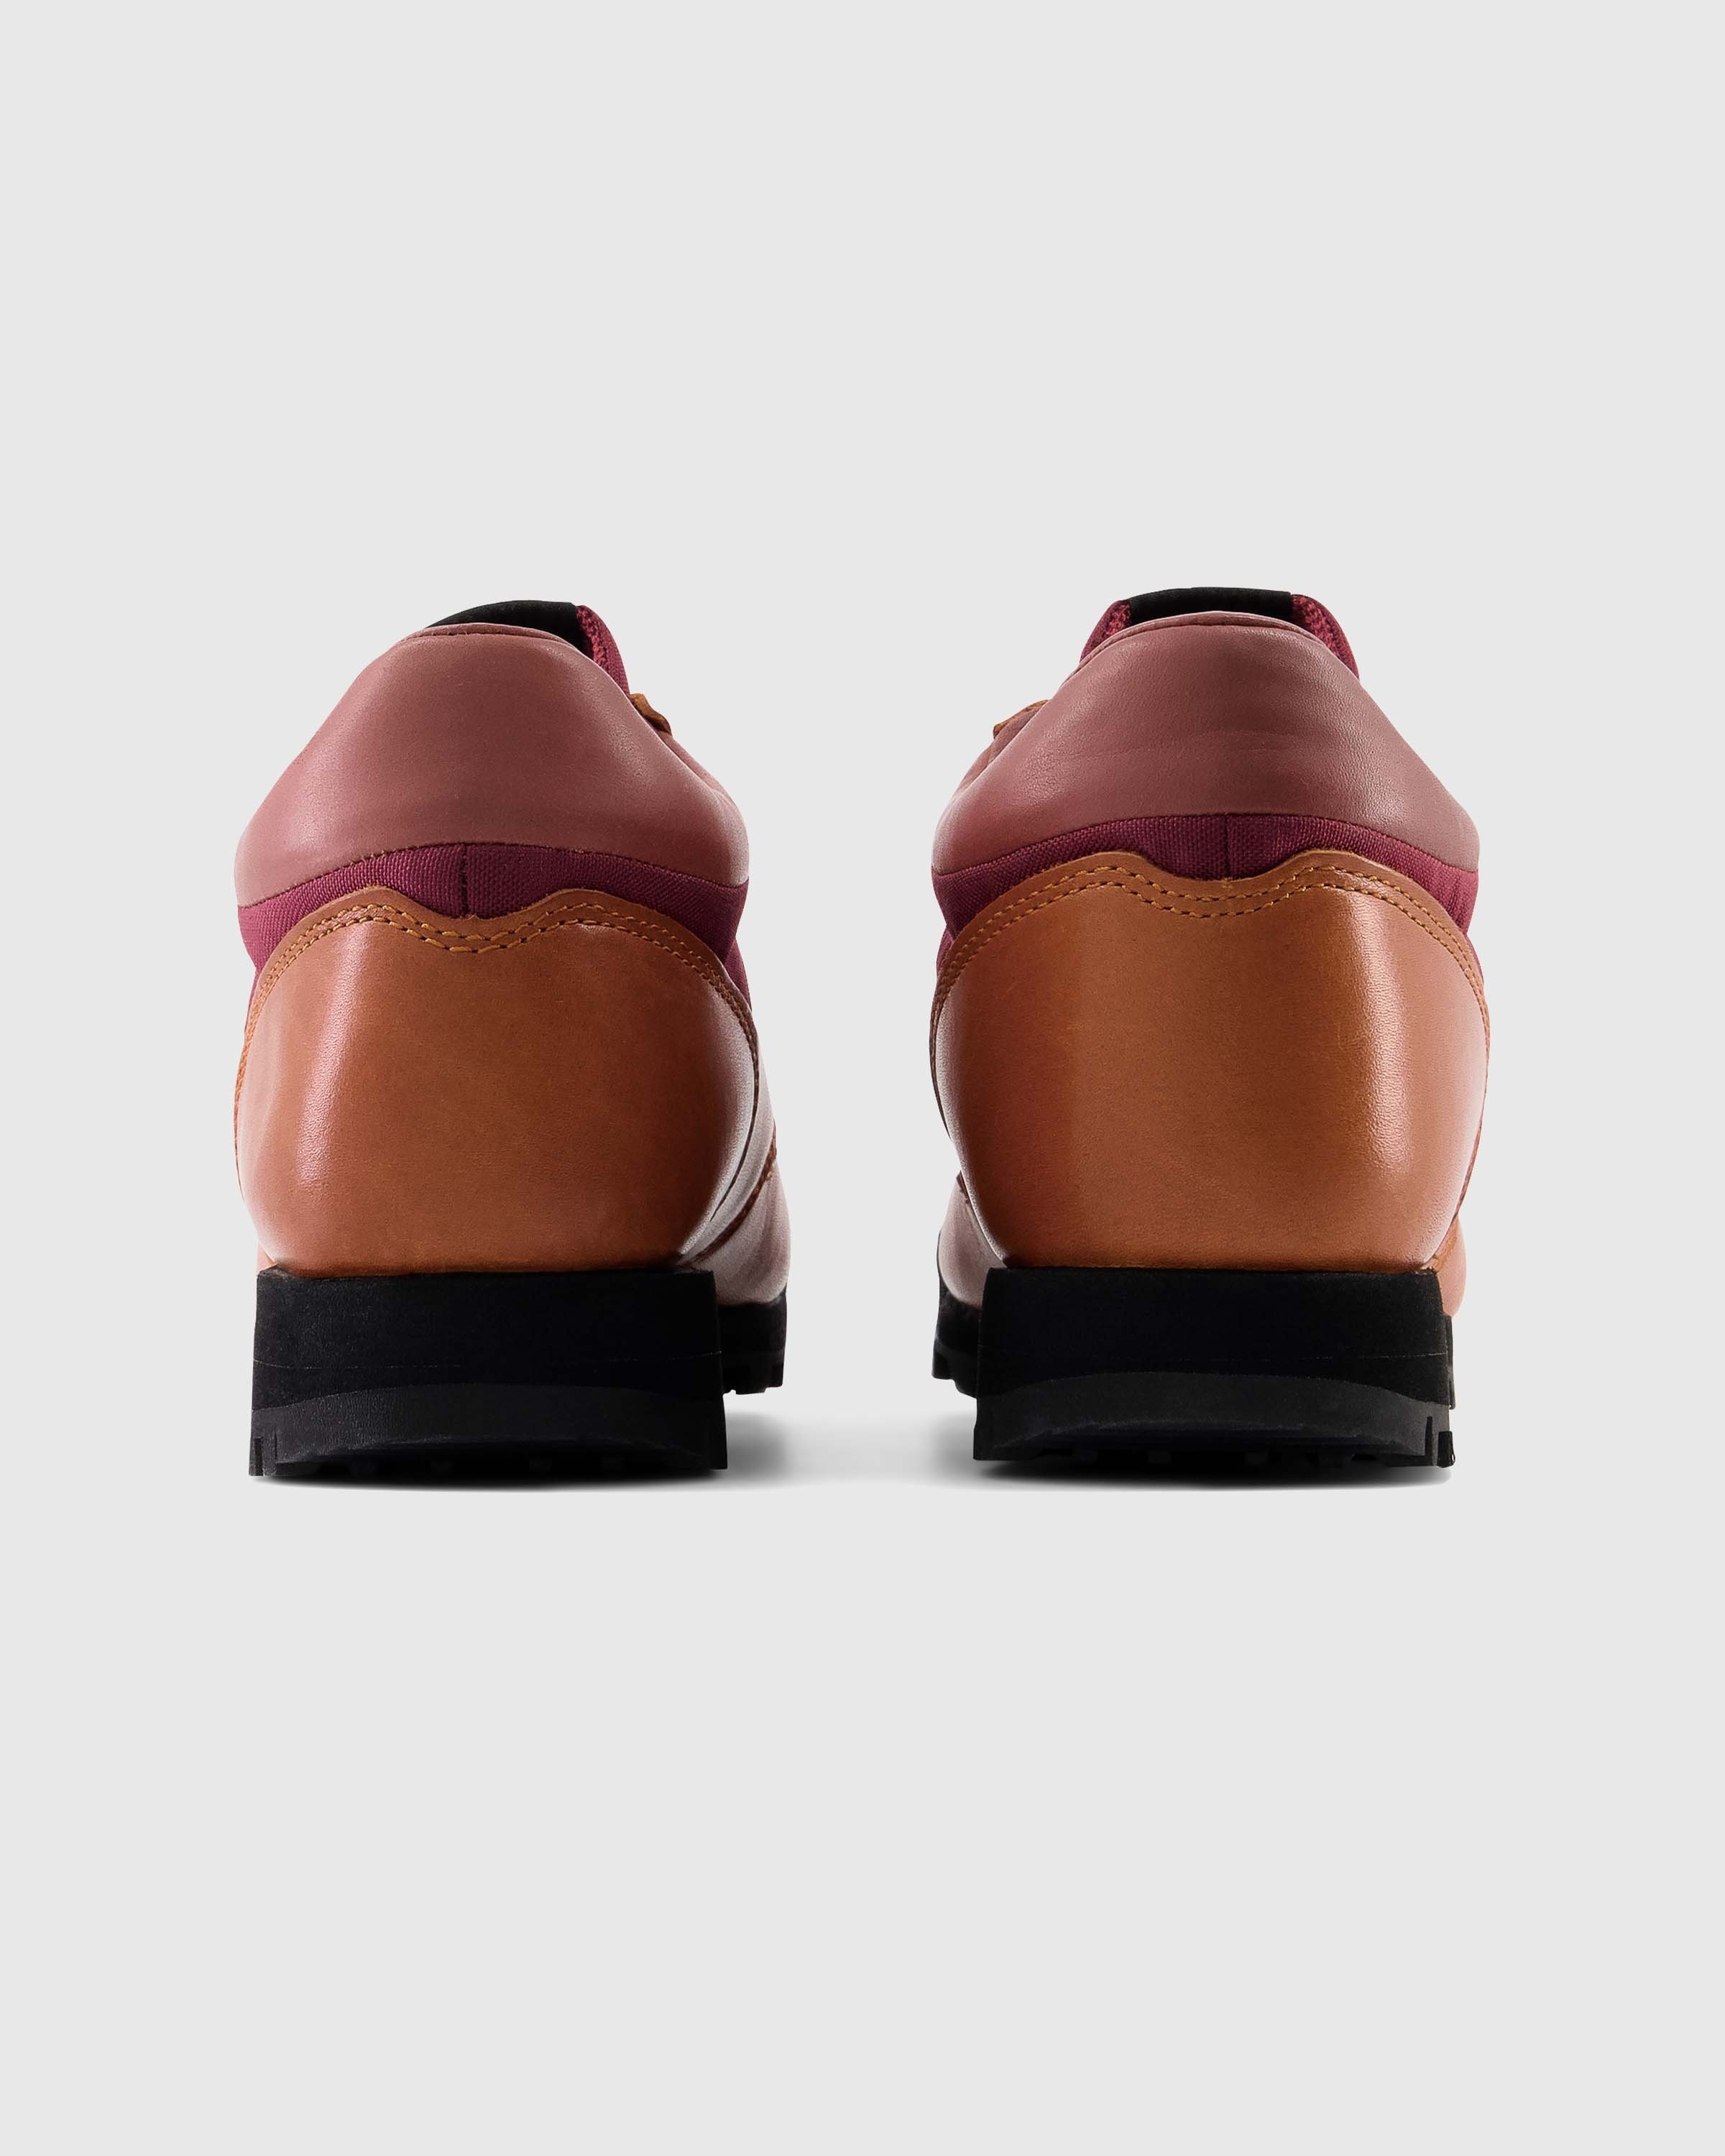 New Balance – UALGSOG Tan - Hiking Boots - Brown - Image 5